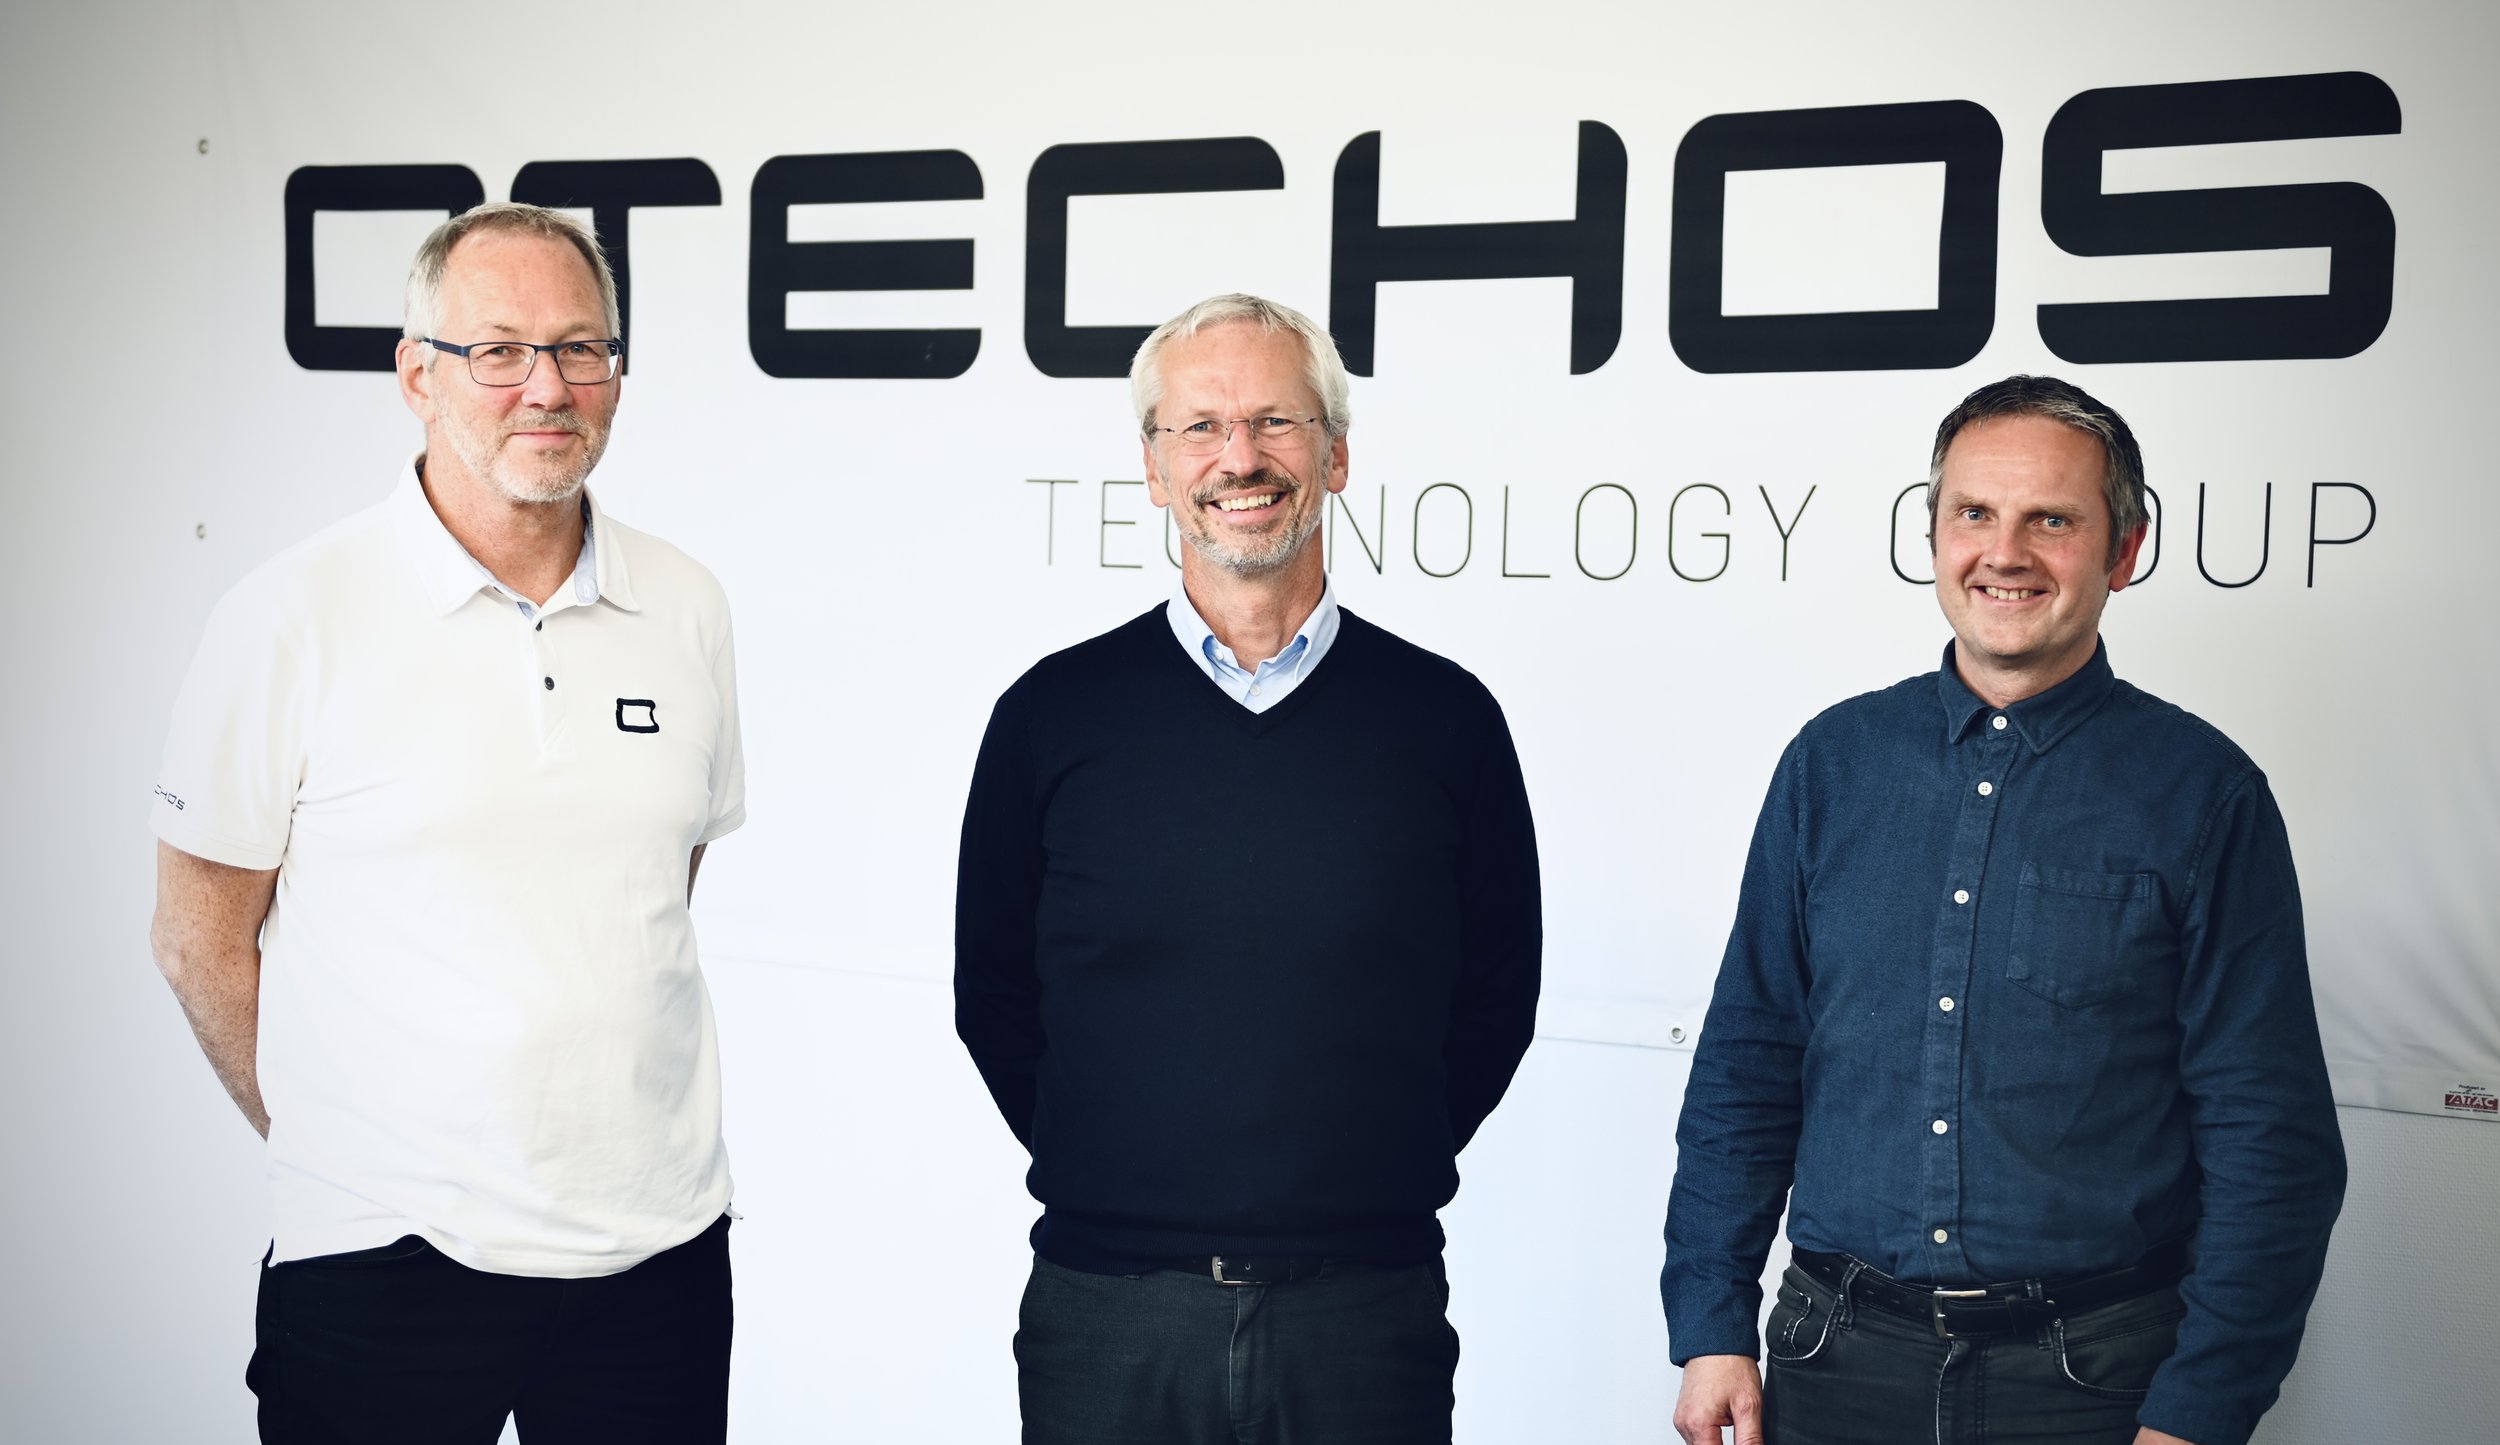 Otechos - Dag Ingvaldsen, Fredrik Thrane and Kjell Kvinnesland